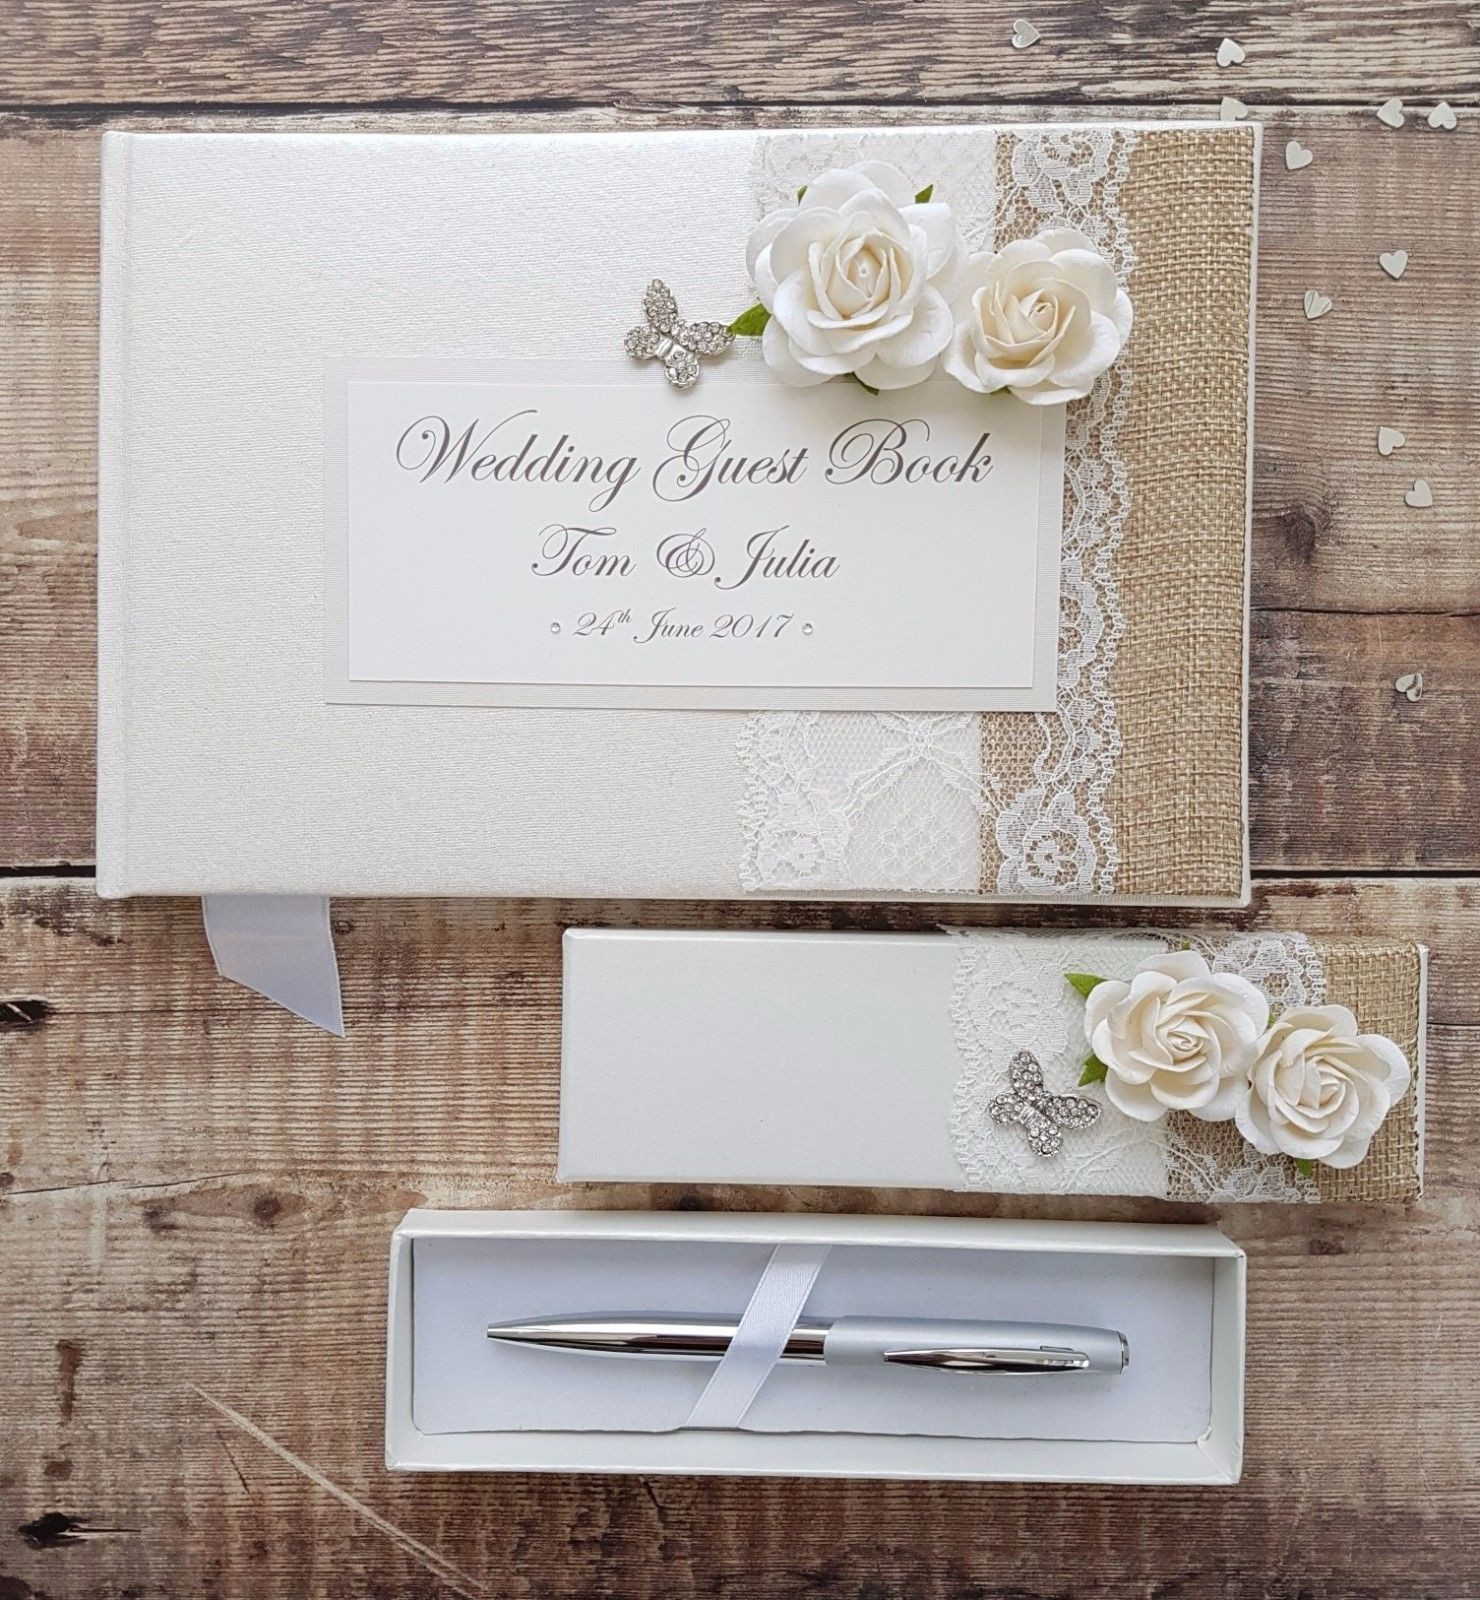 Handmade Wedding Guest Books
 Wedding Guest Book & Pen Set – Handmade Hessian Lace